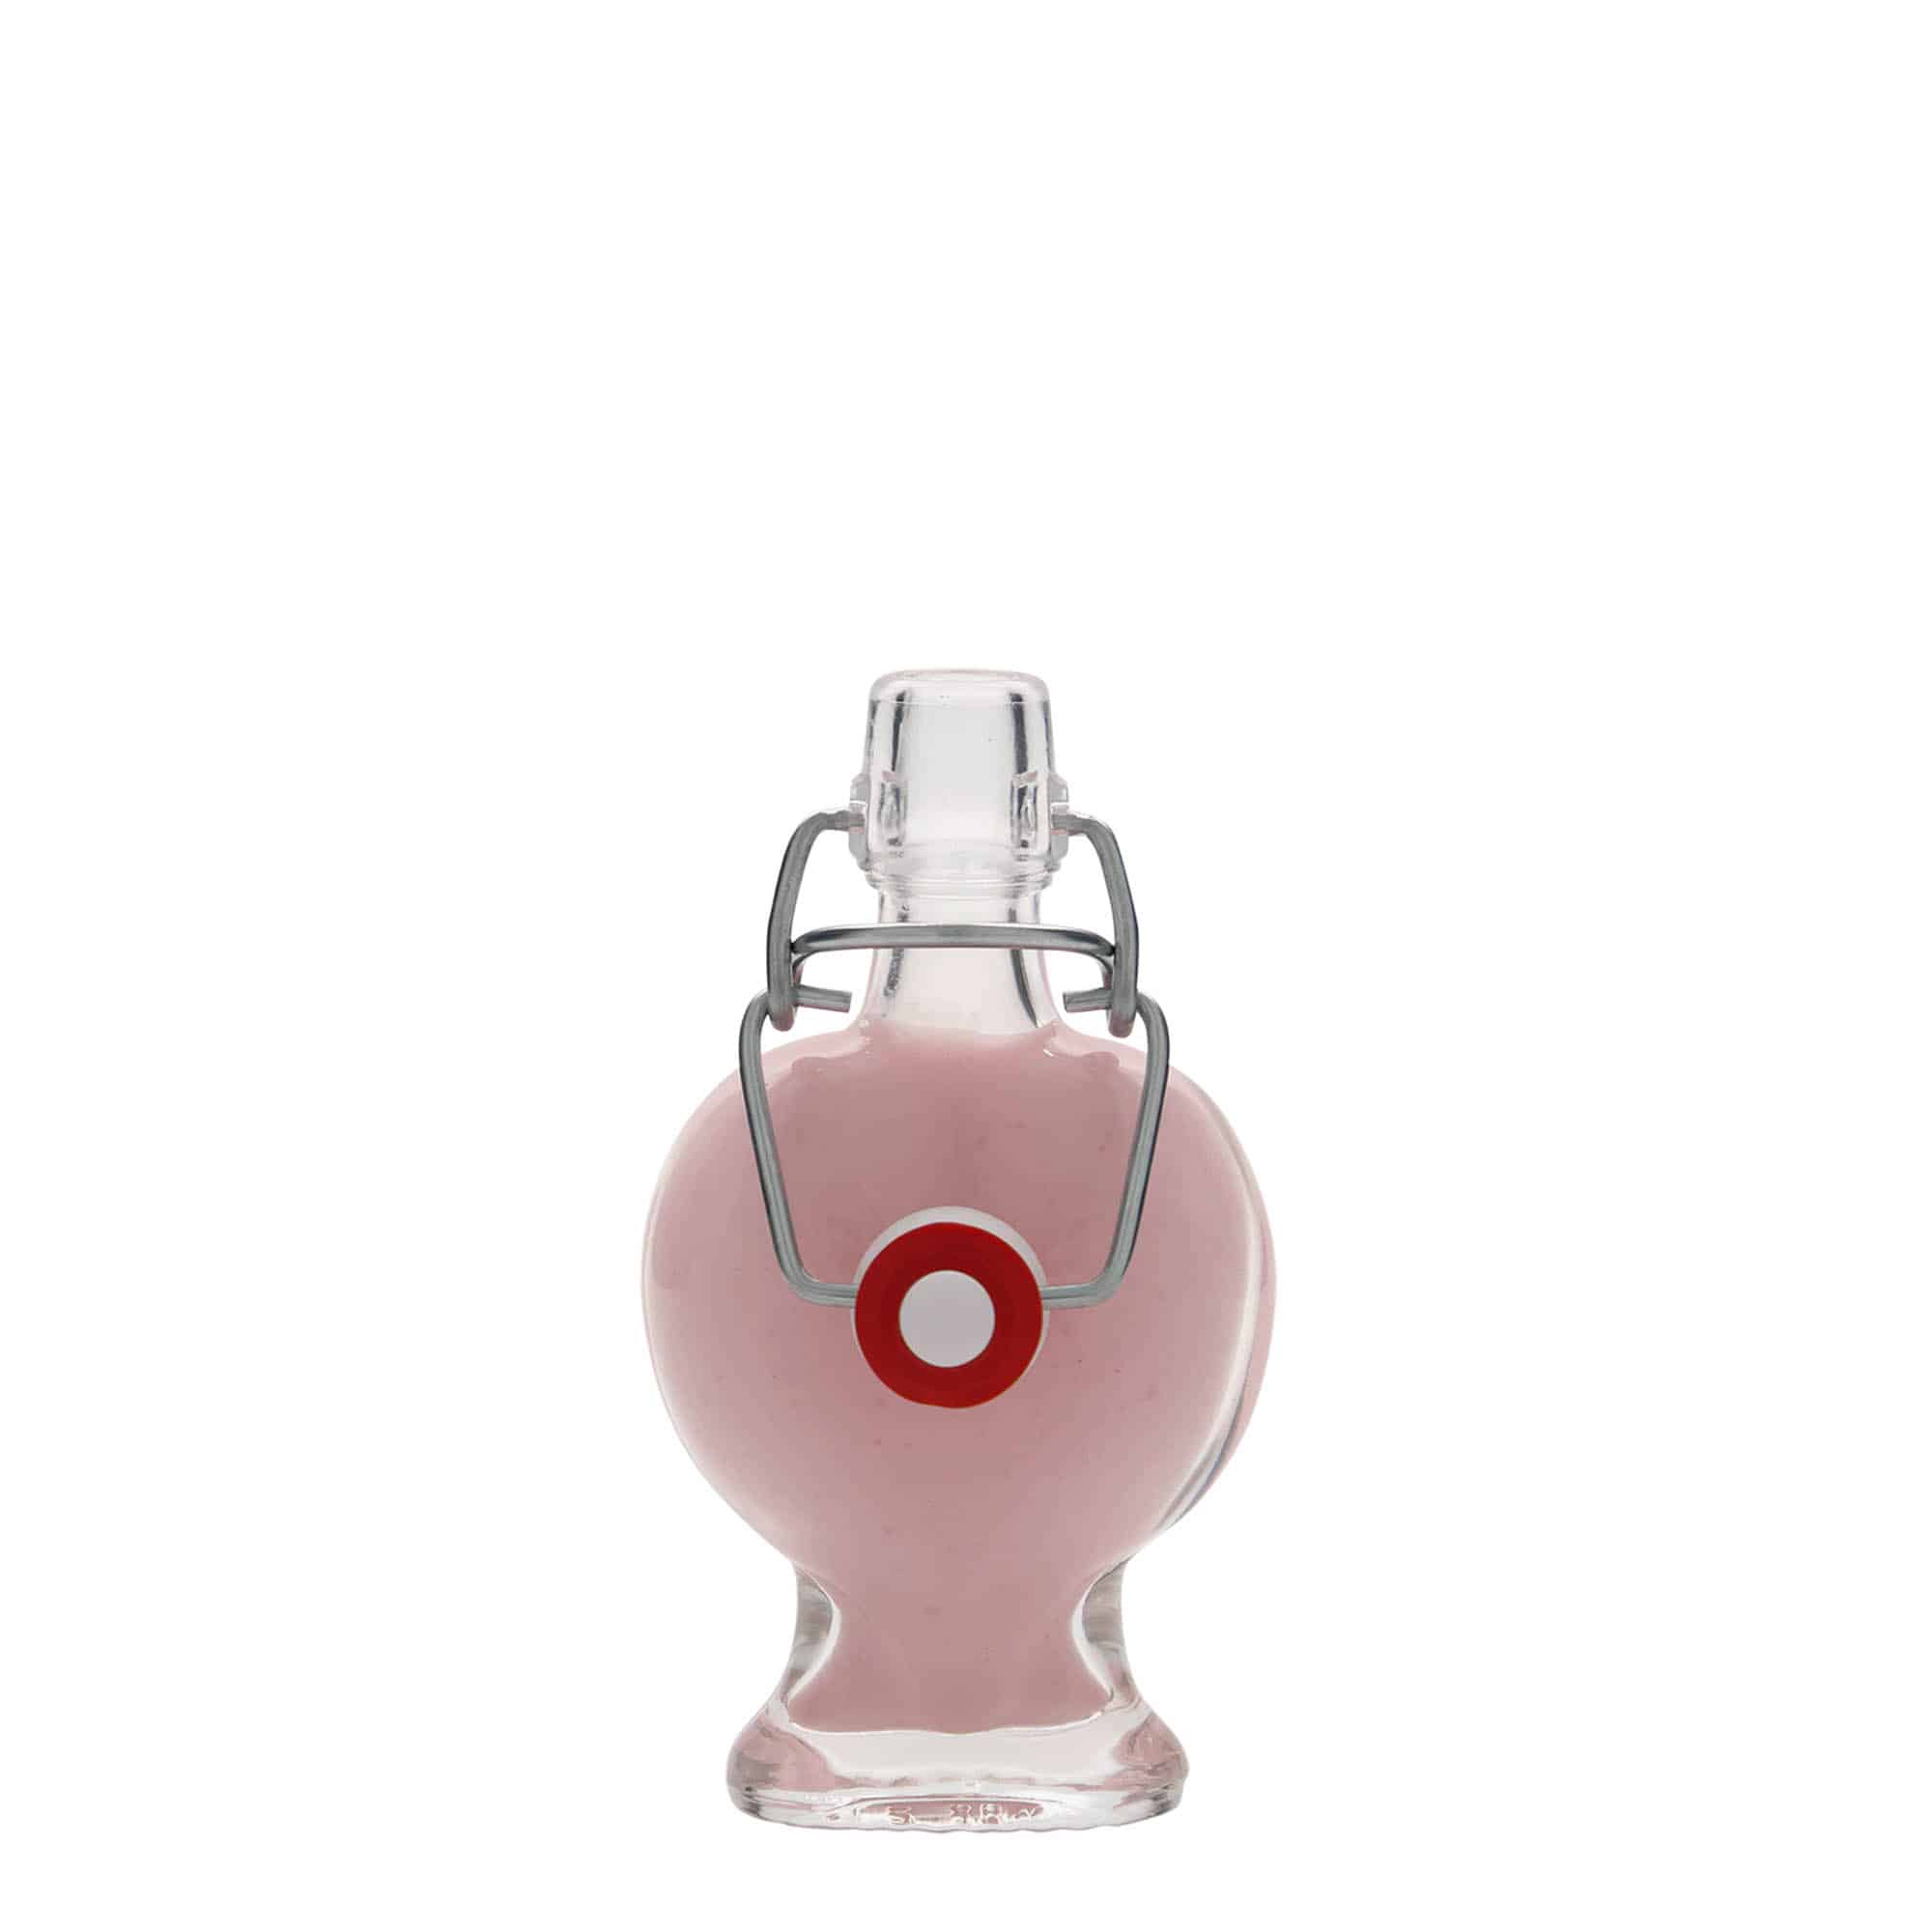 40 ml glass bottle 'Heart', closure: swing top